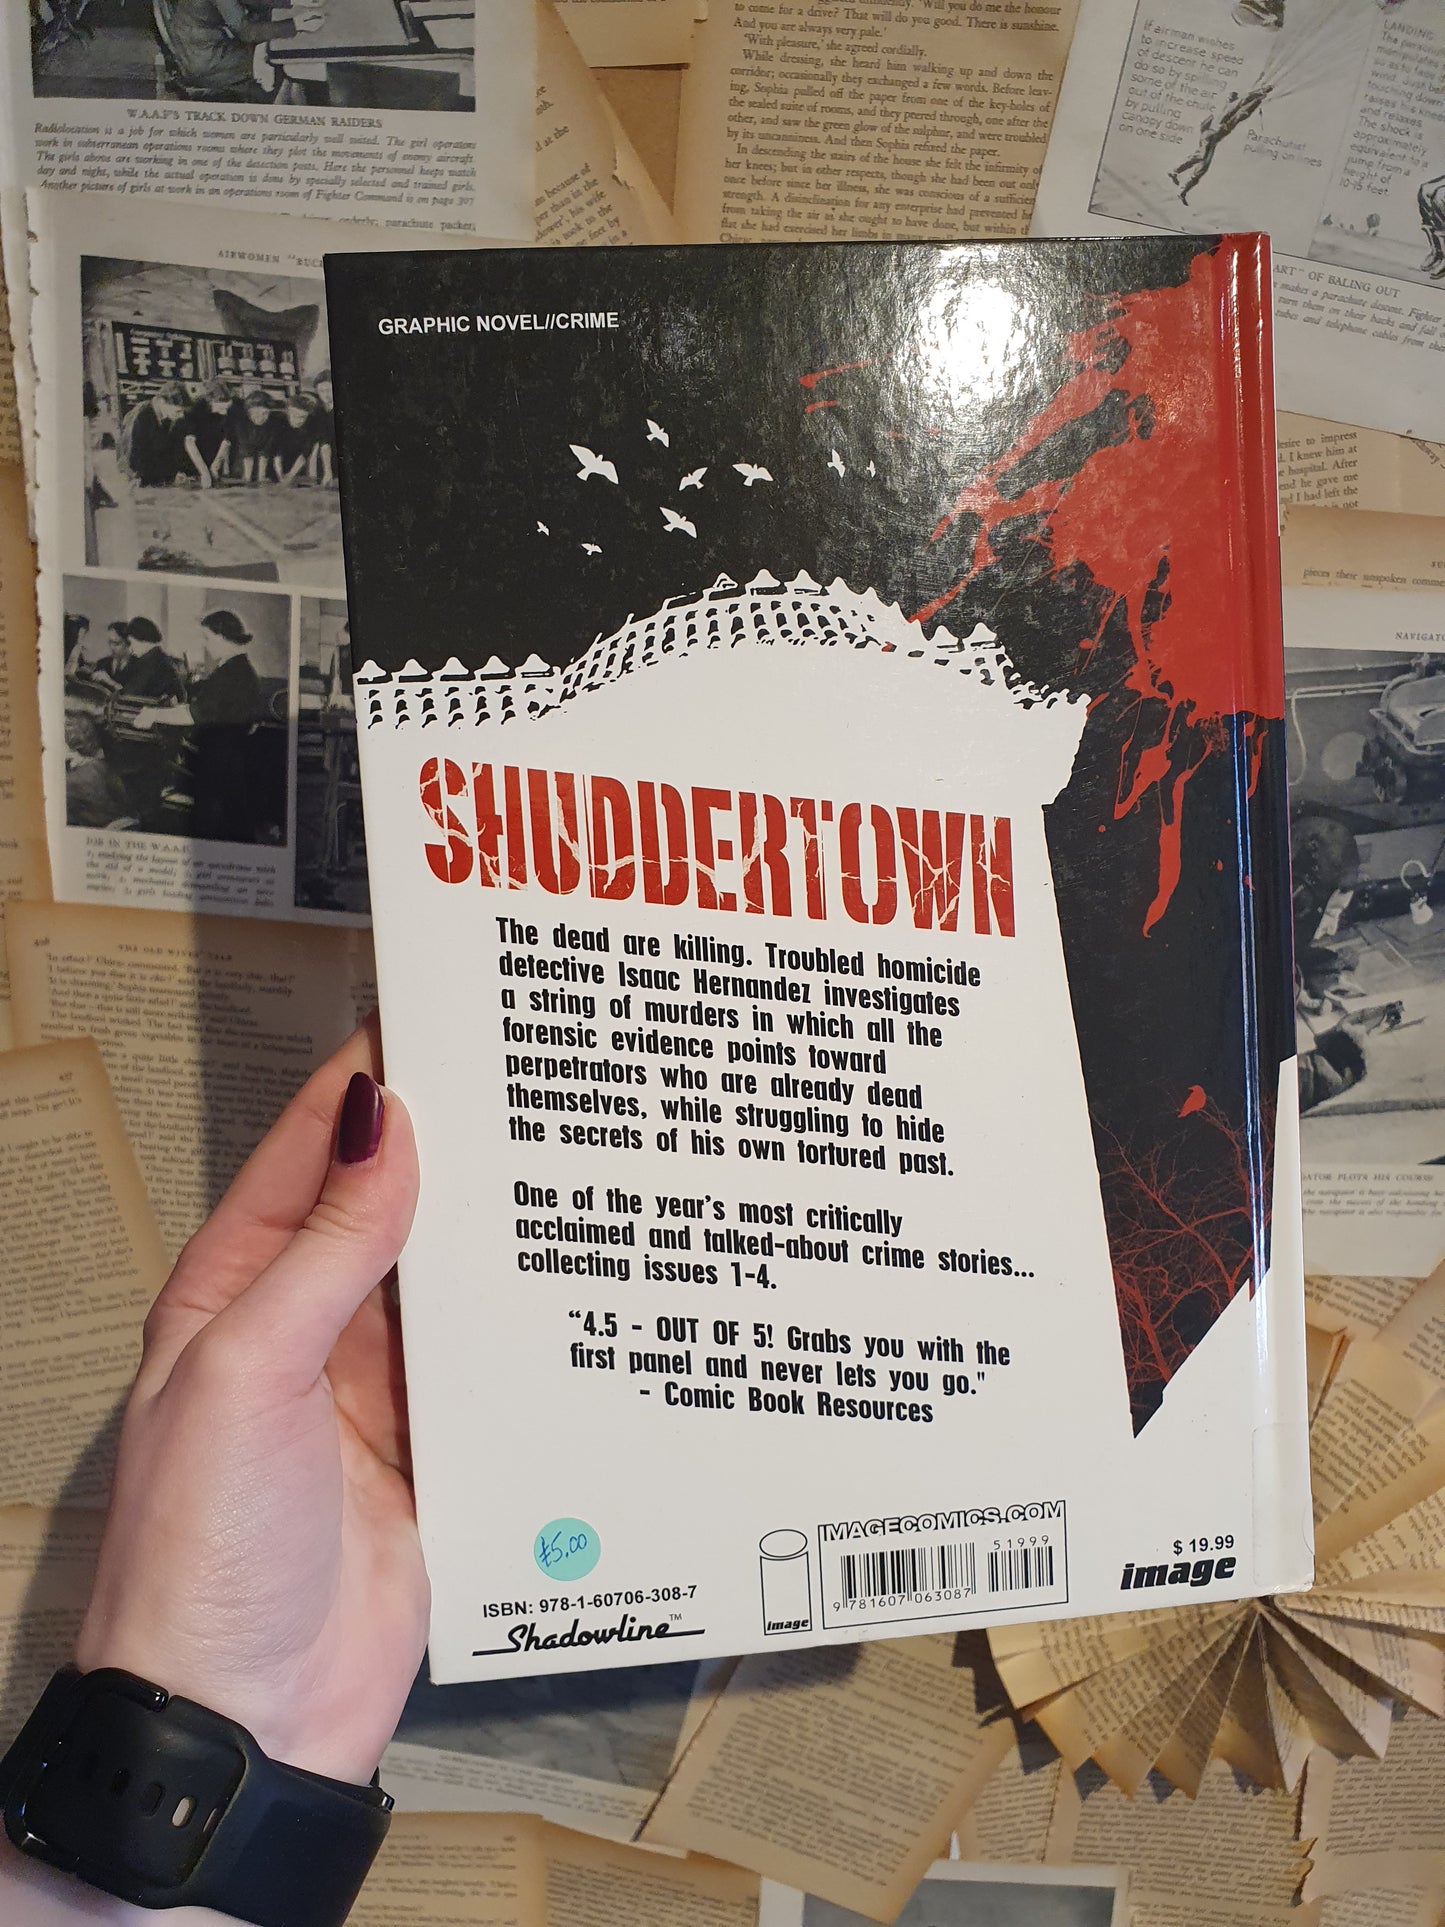 Shuddertown by Spencer & Geen (2010)